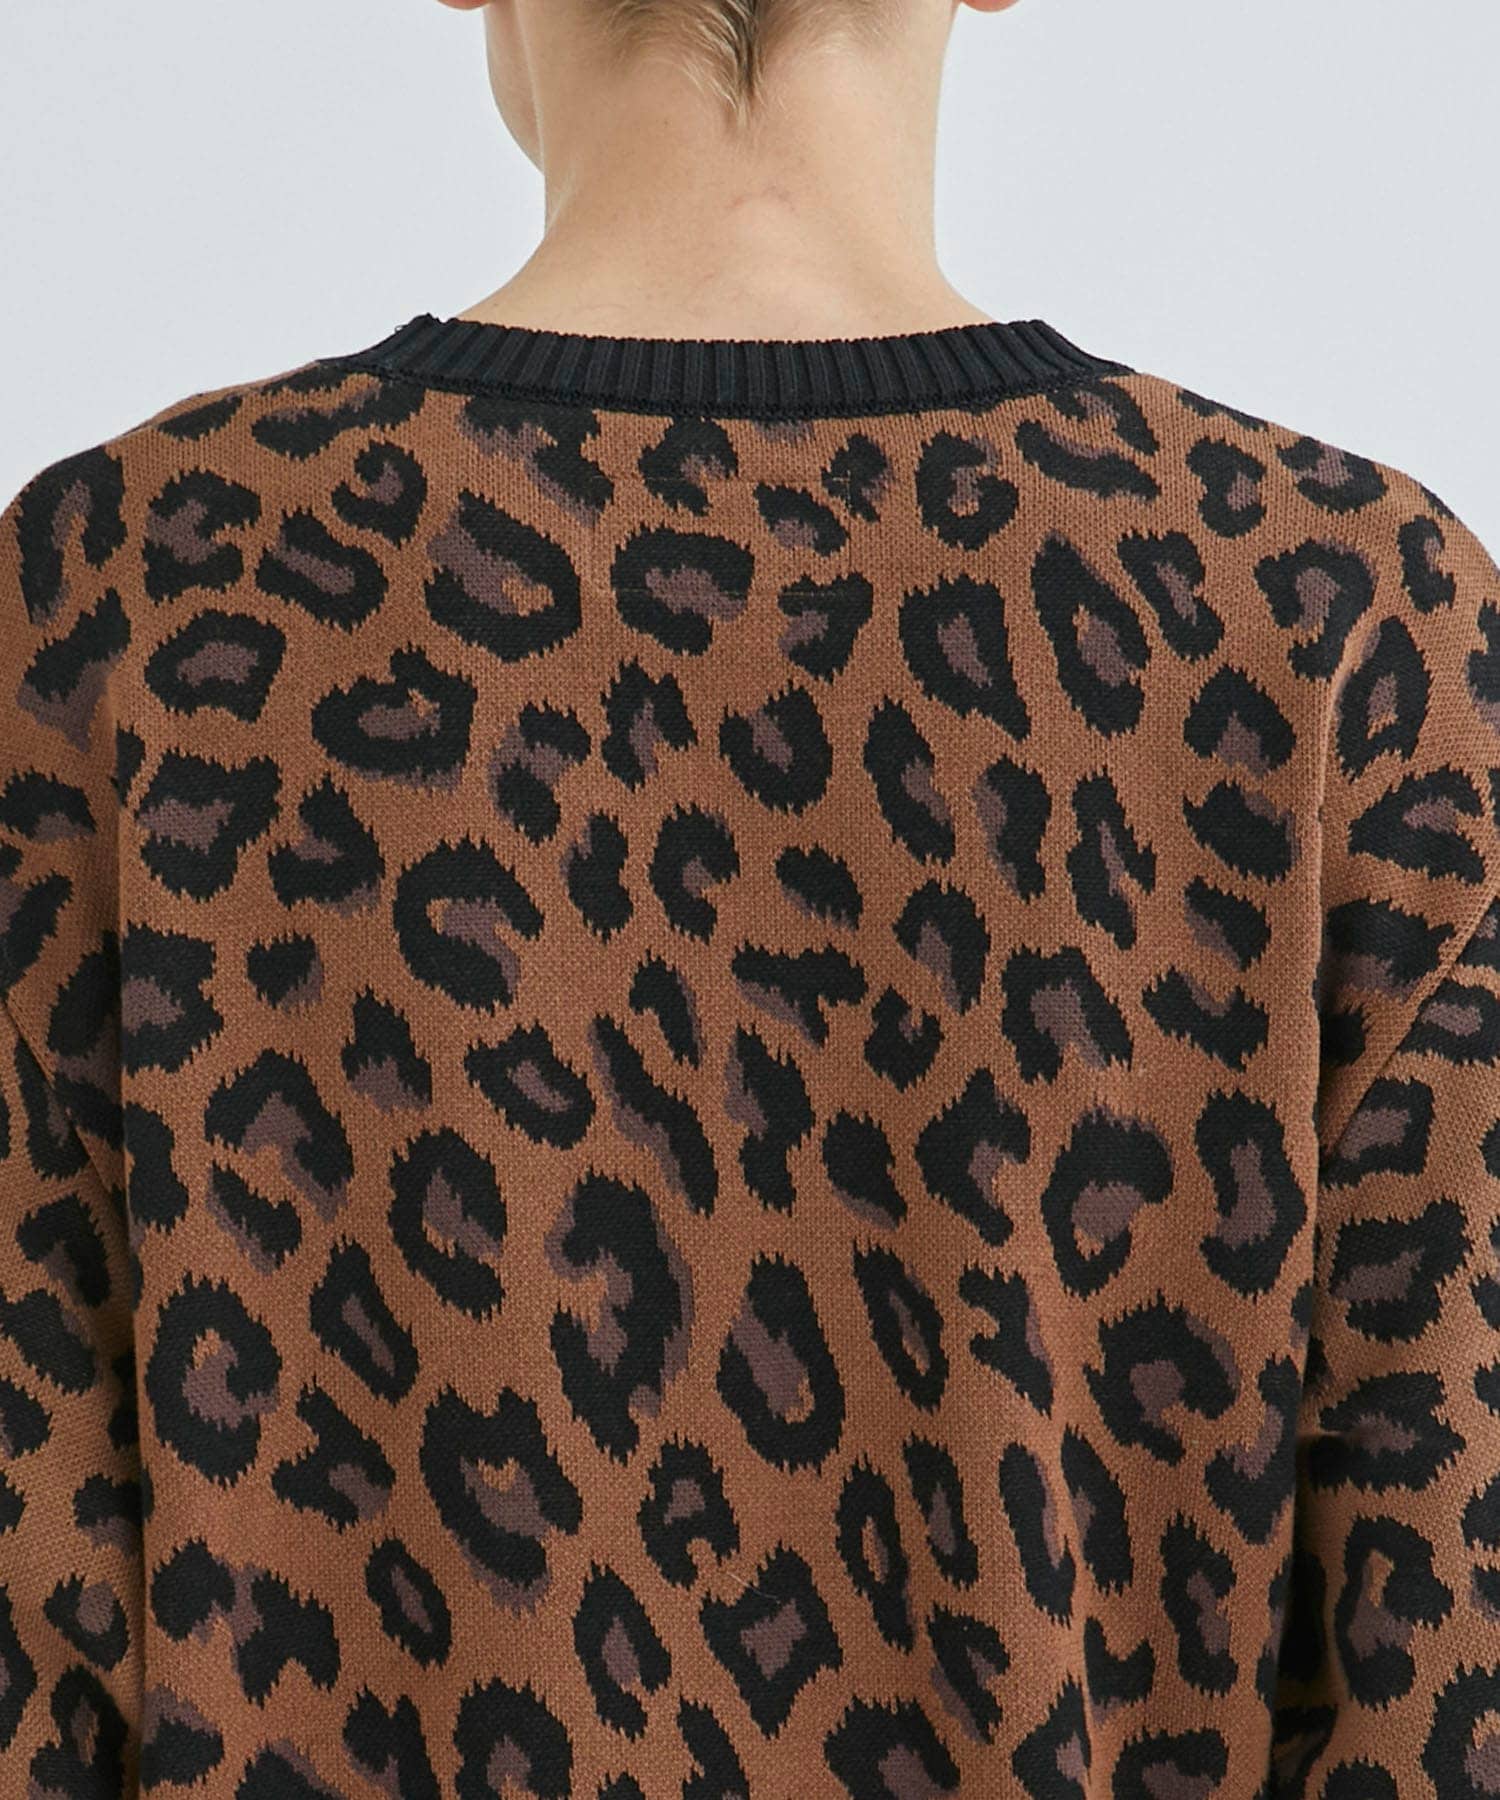 Leopard Sweater (Knit) – Lion Brand Yarn